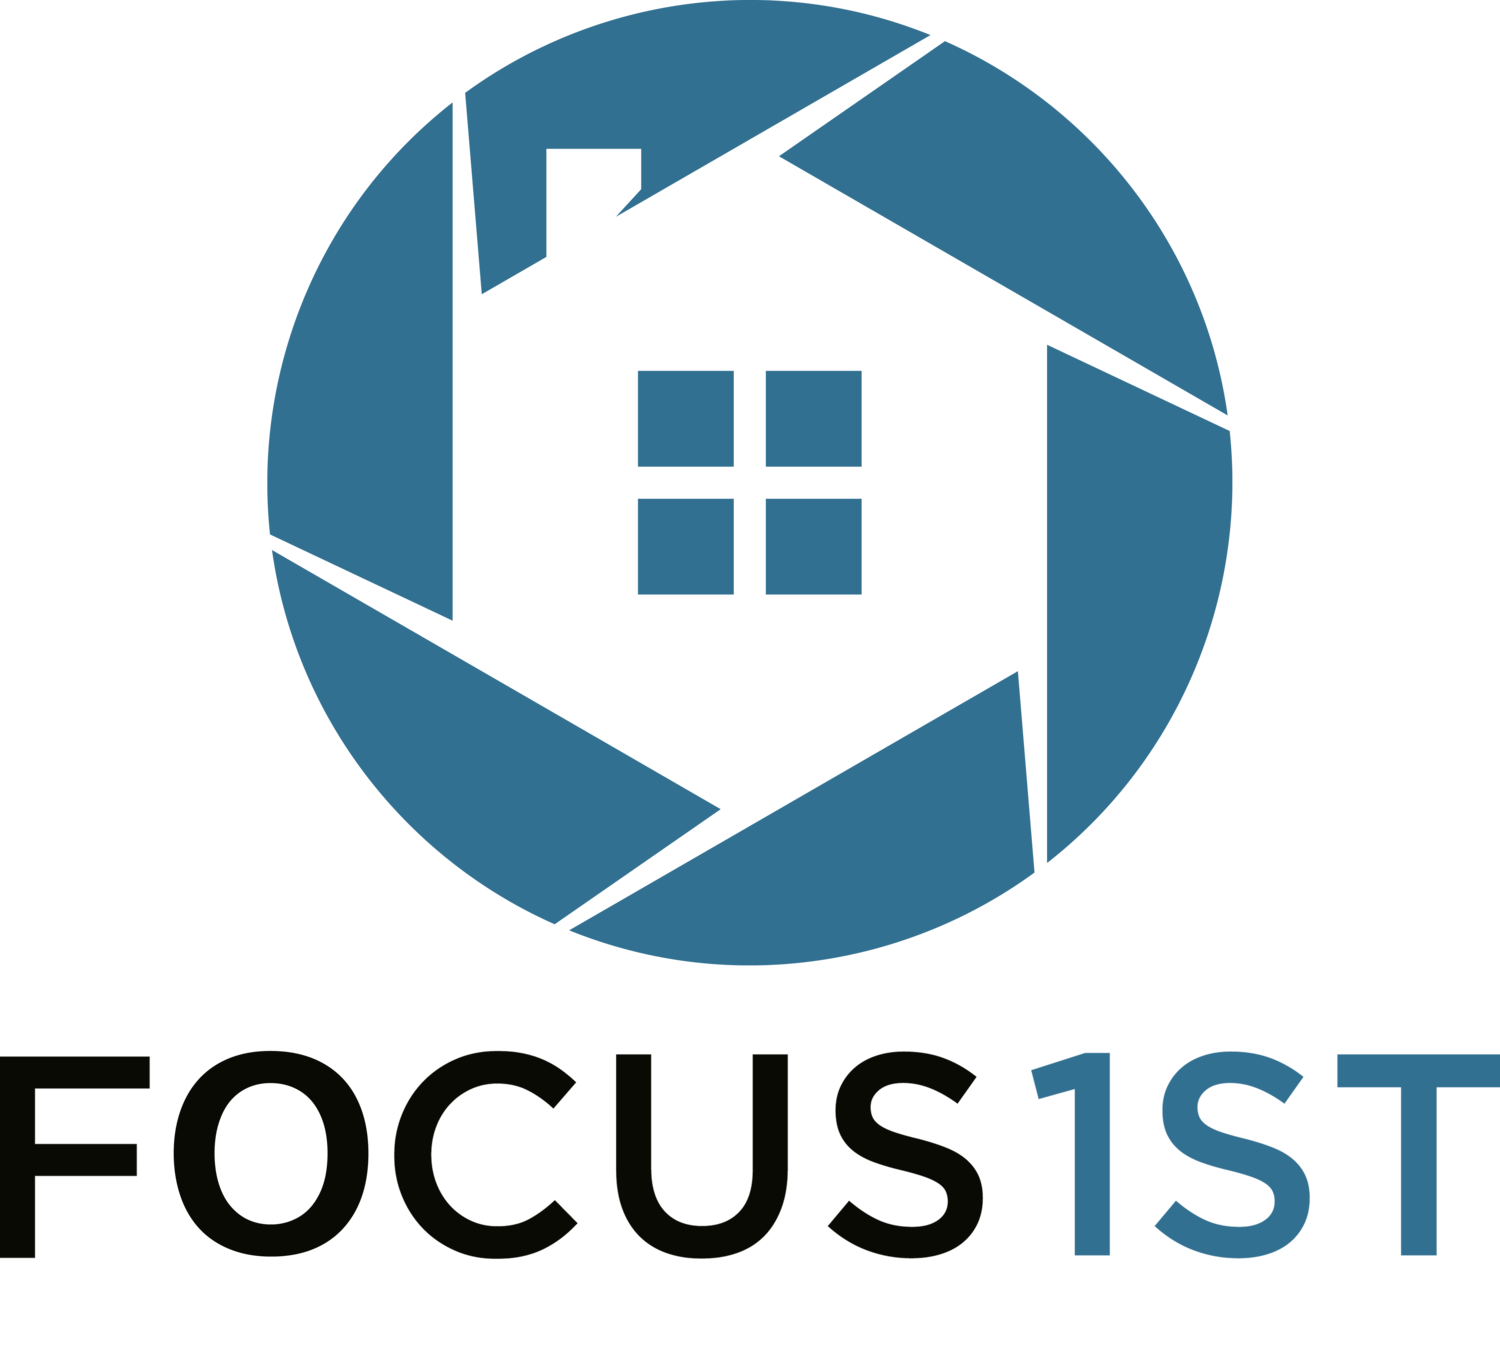 Focus 1st LLC